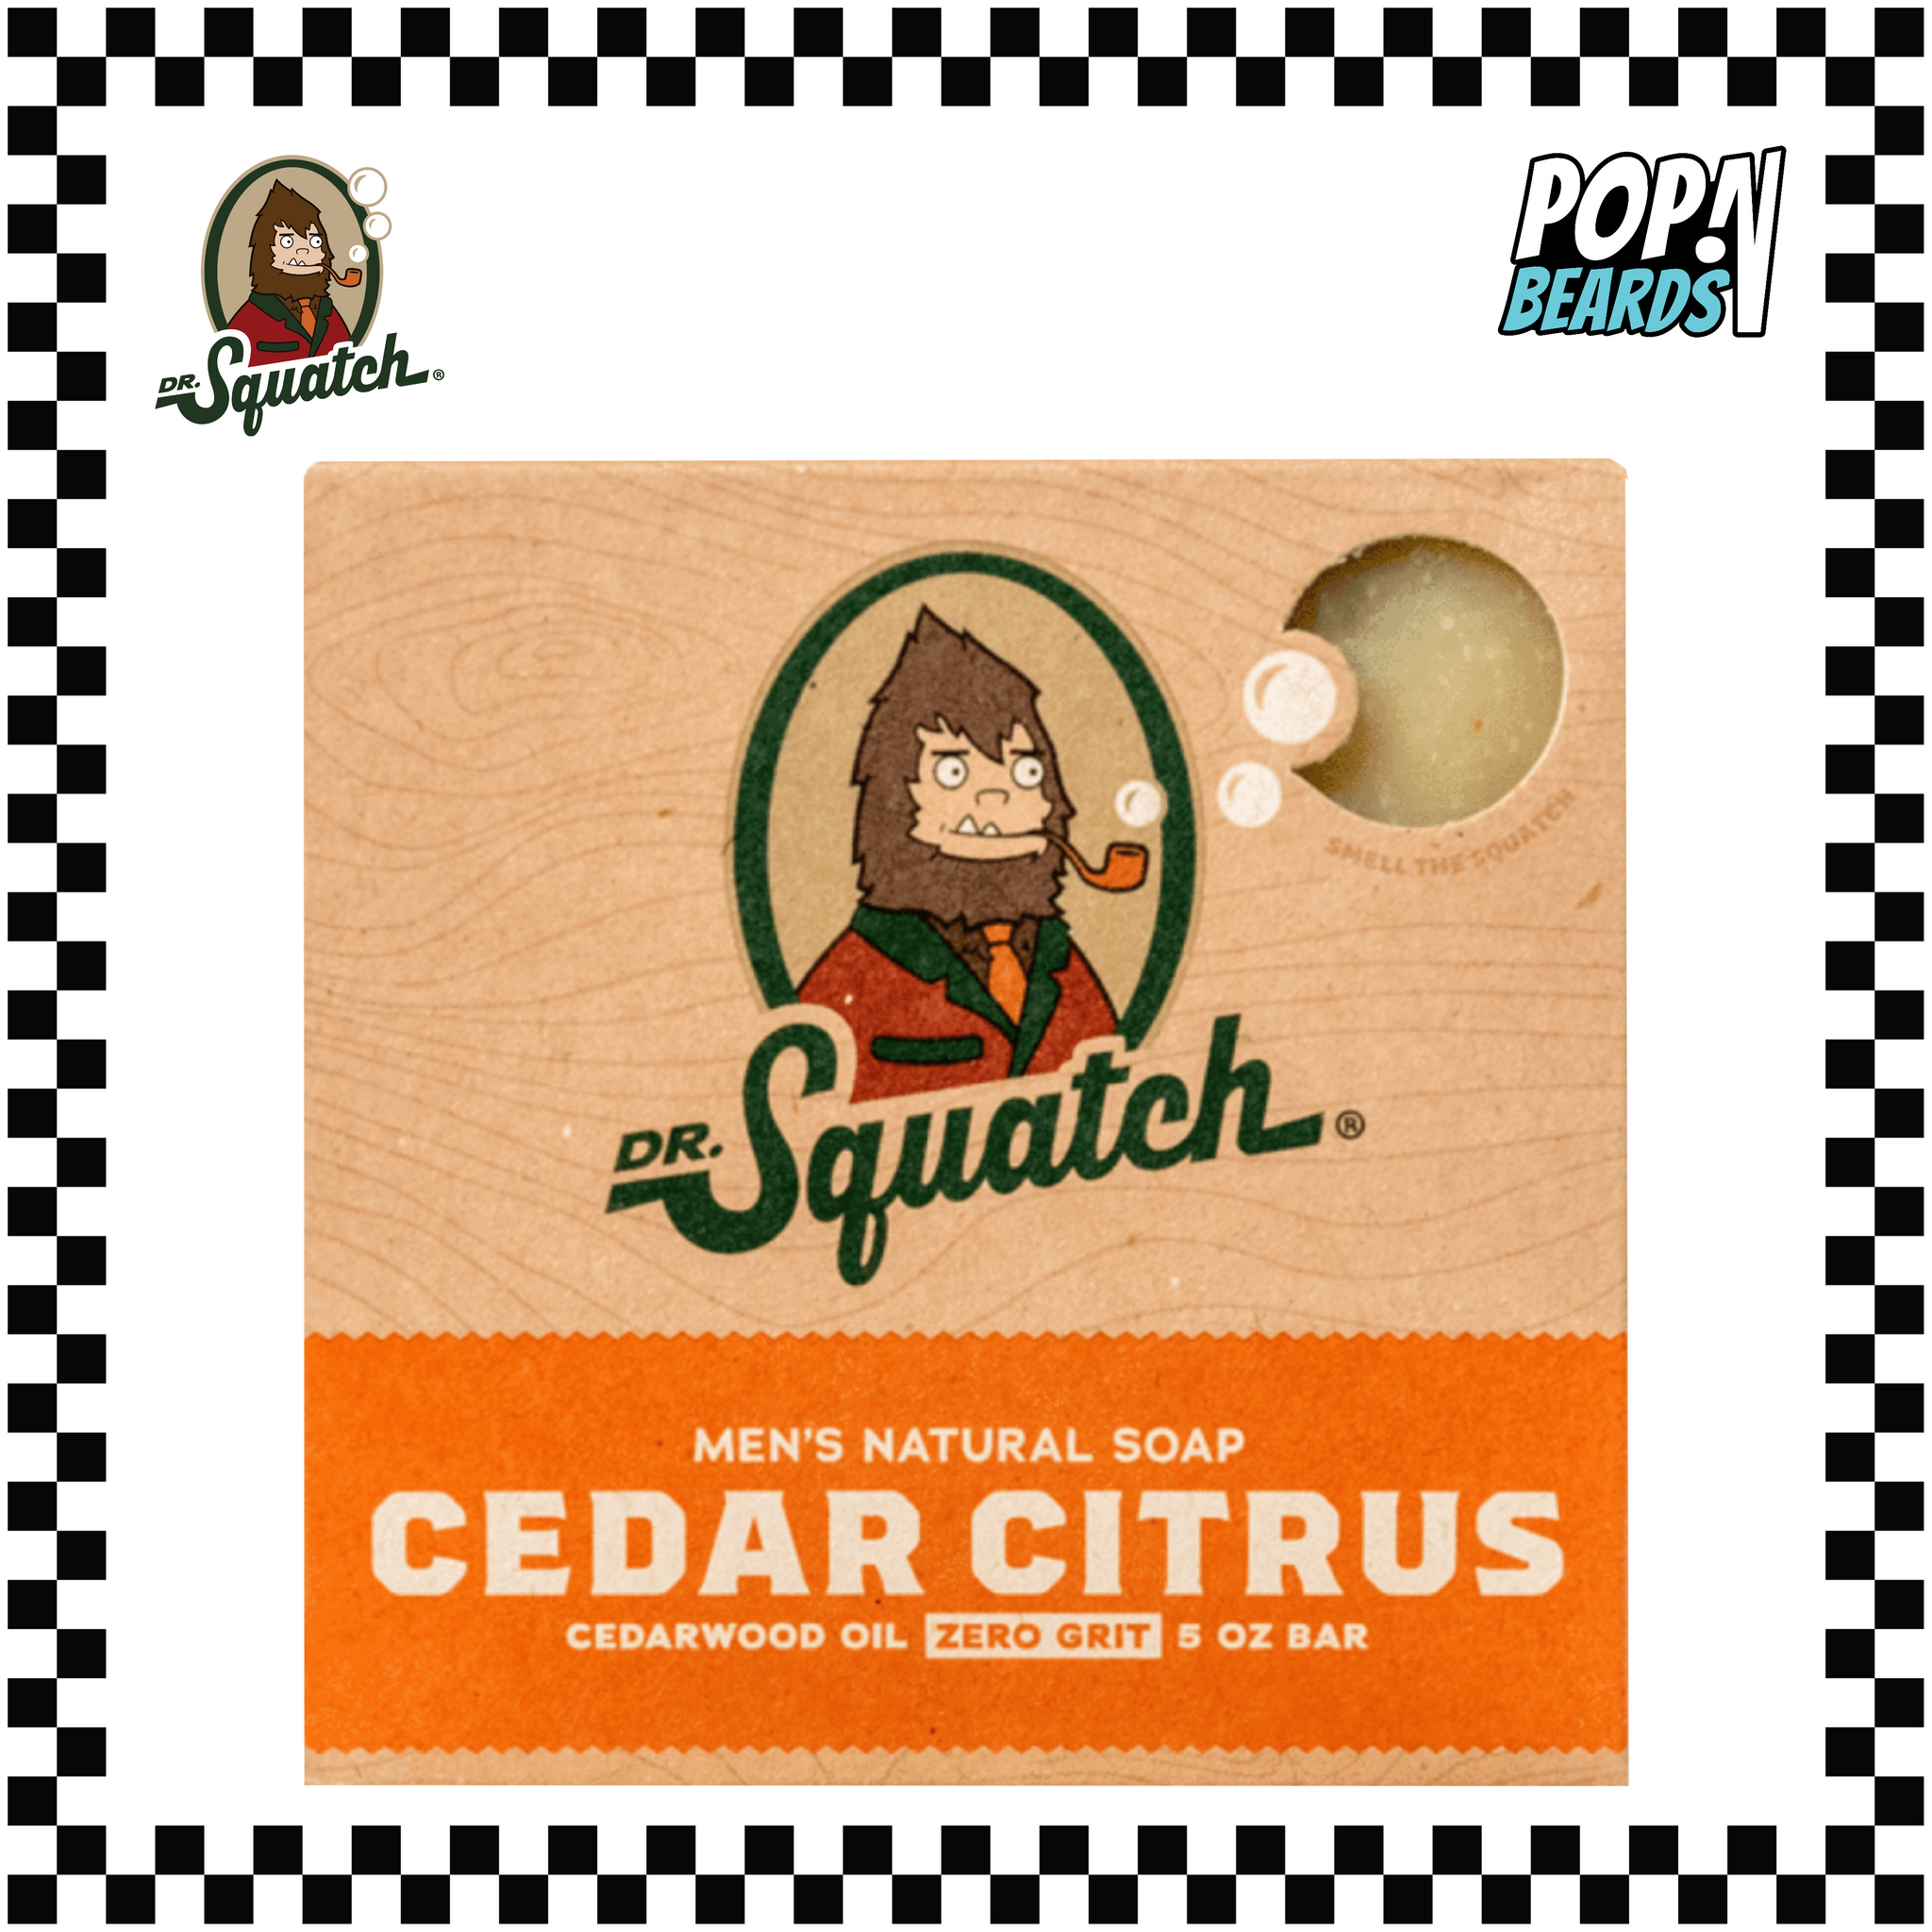 Dr. Squatch Soap - Cedar Citrus